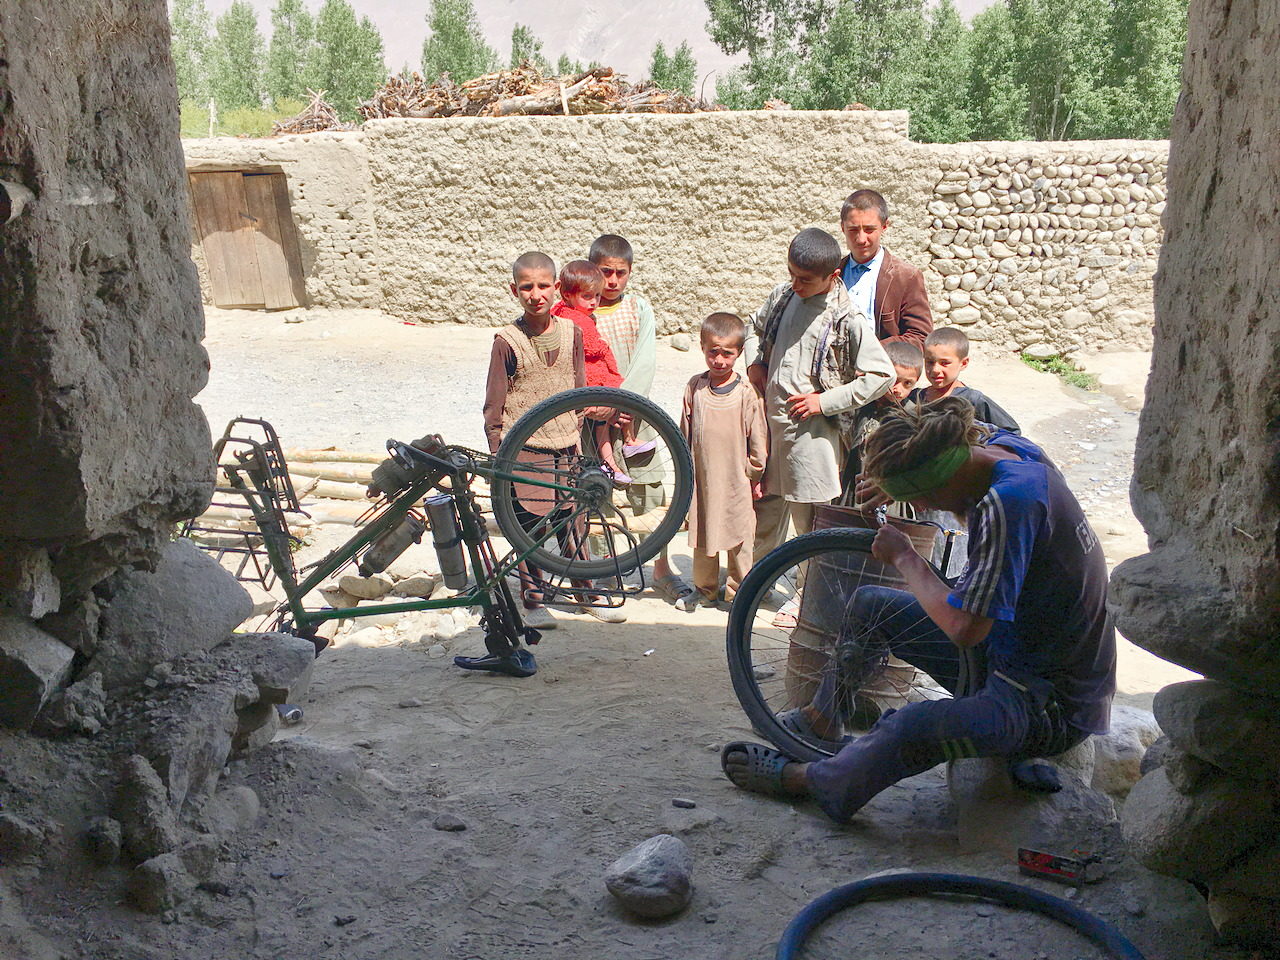 Repair work in Afghanistan